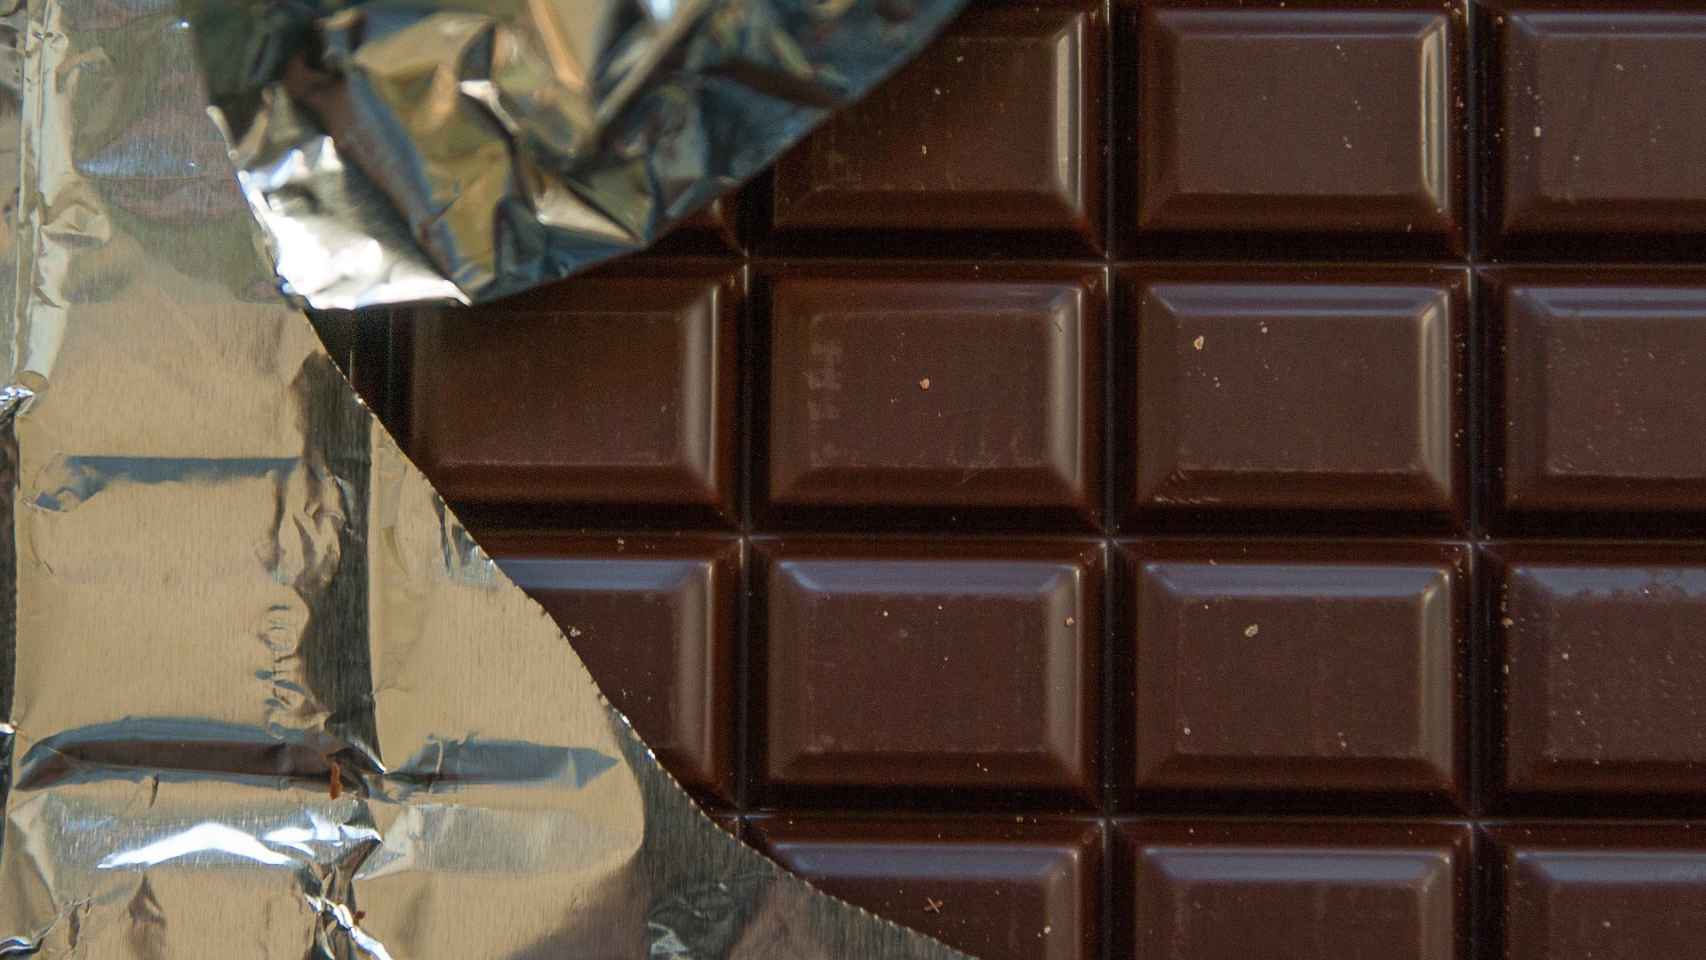 El chocolate negro.  Chocolate-Azucar-Cacao-Nutricion_435468870_134783015_1706x960